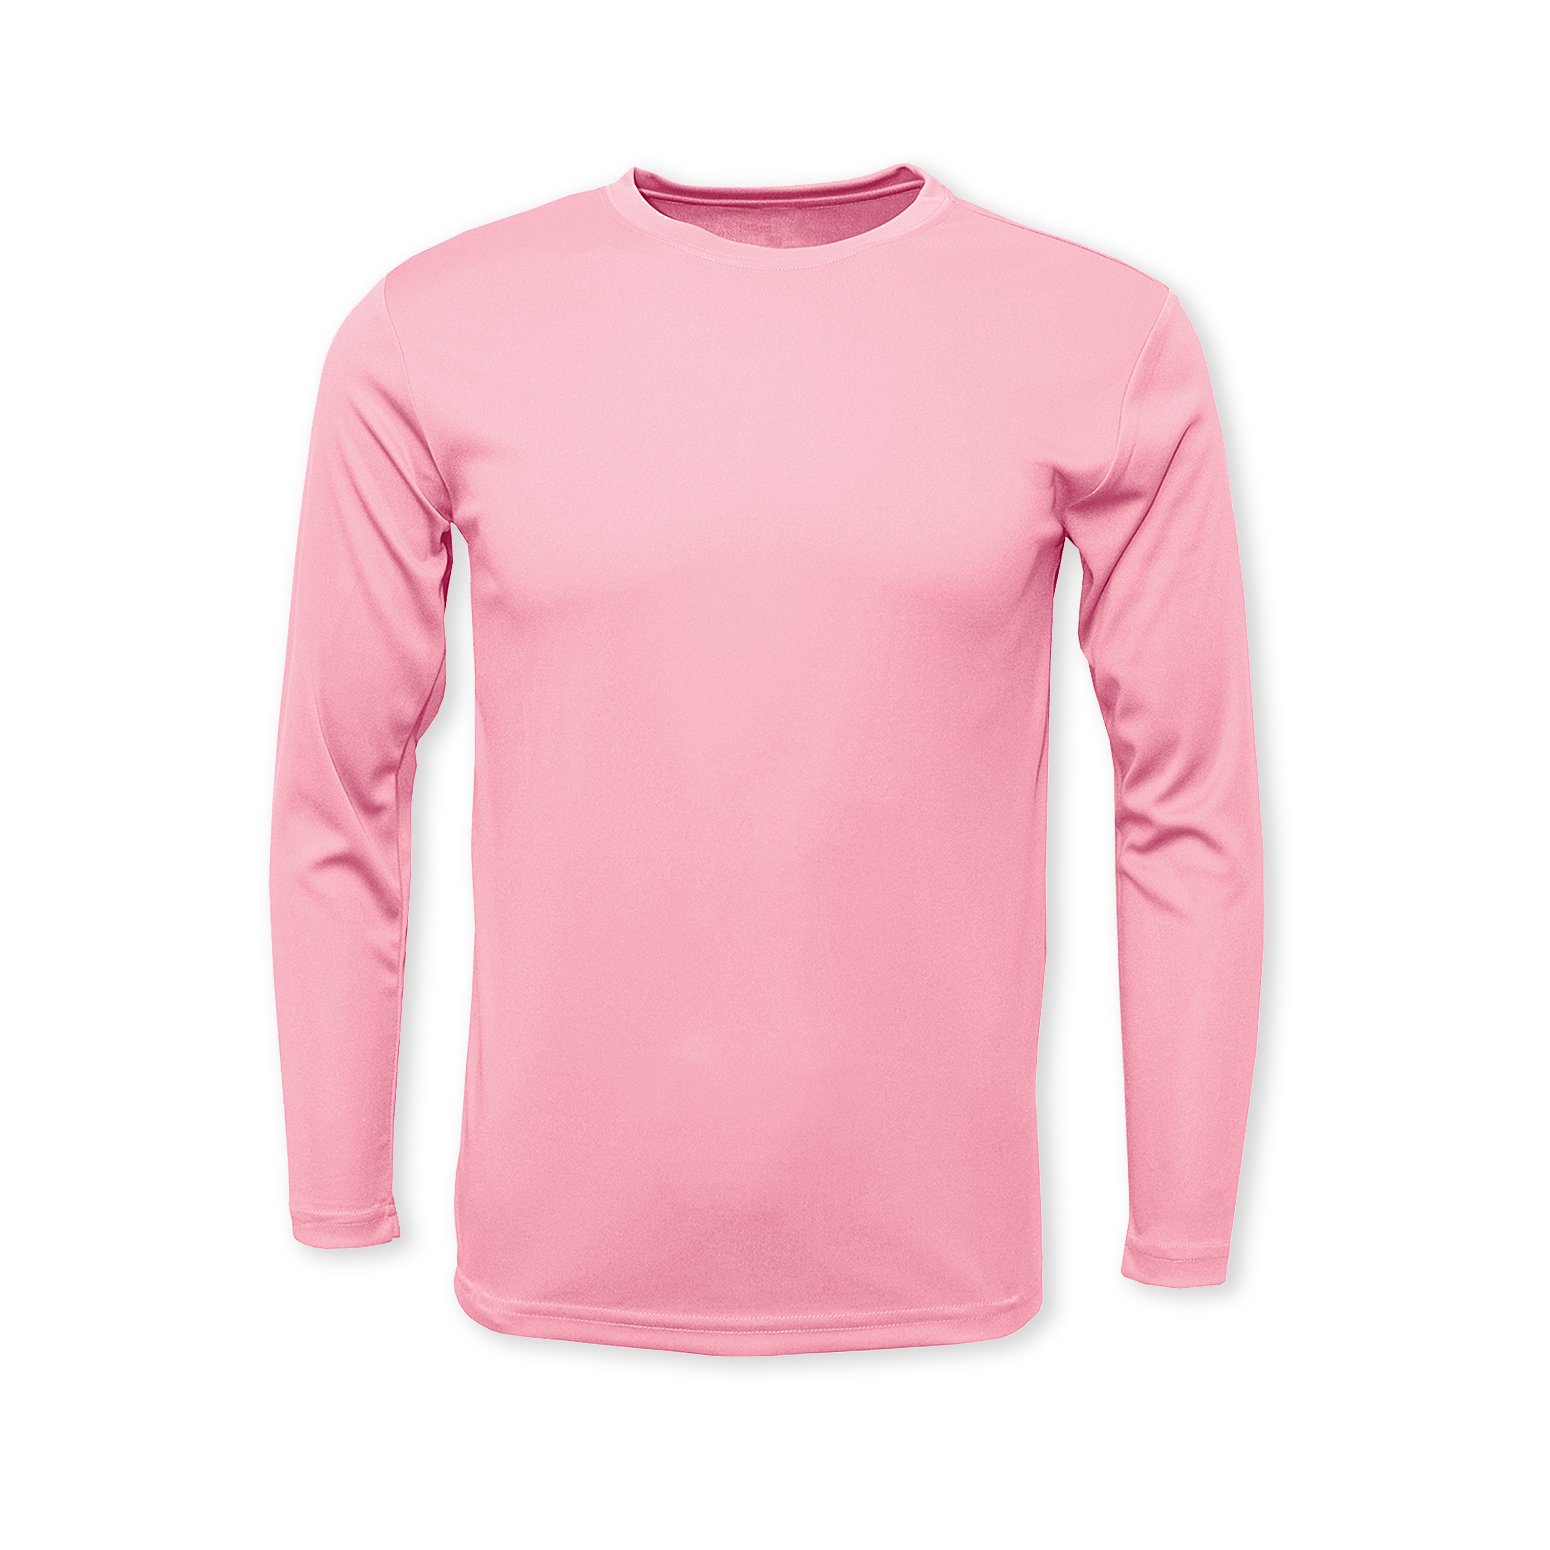 https://saltyprinting.com/cdn/shop/products/light-pink-front-performance-long-sleeve-t-shirt_517a9651-bf8c-4d40-b157-006ba88b42ad.png?v=1660317780